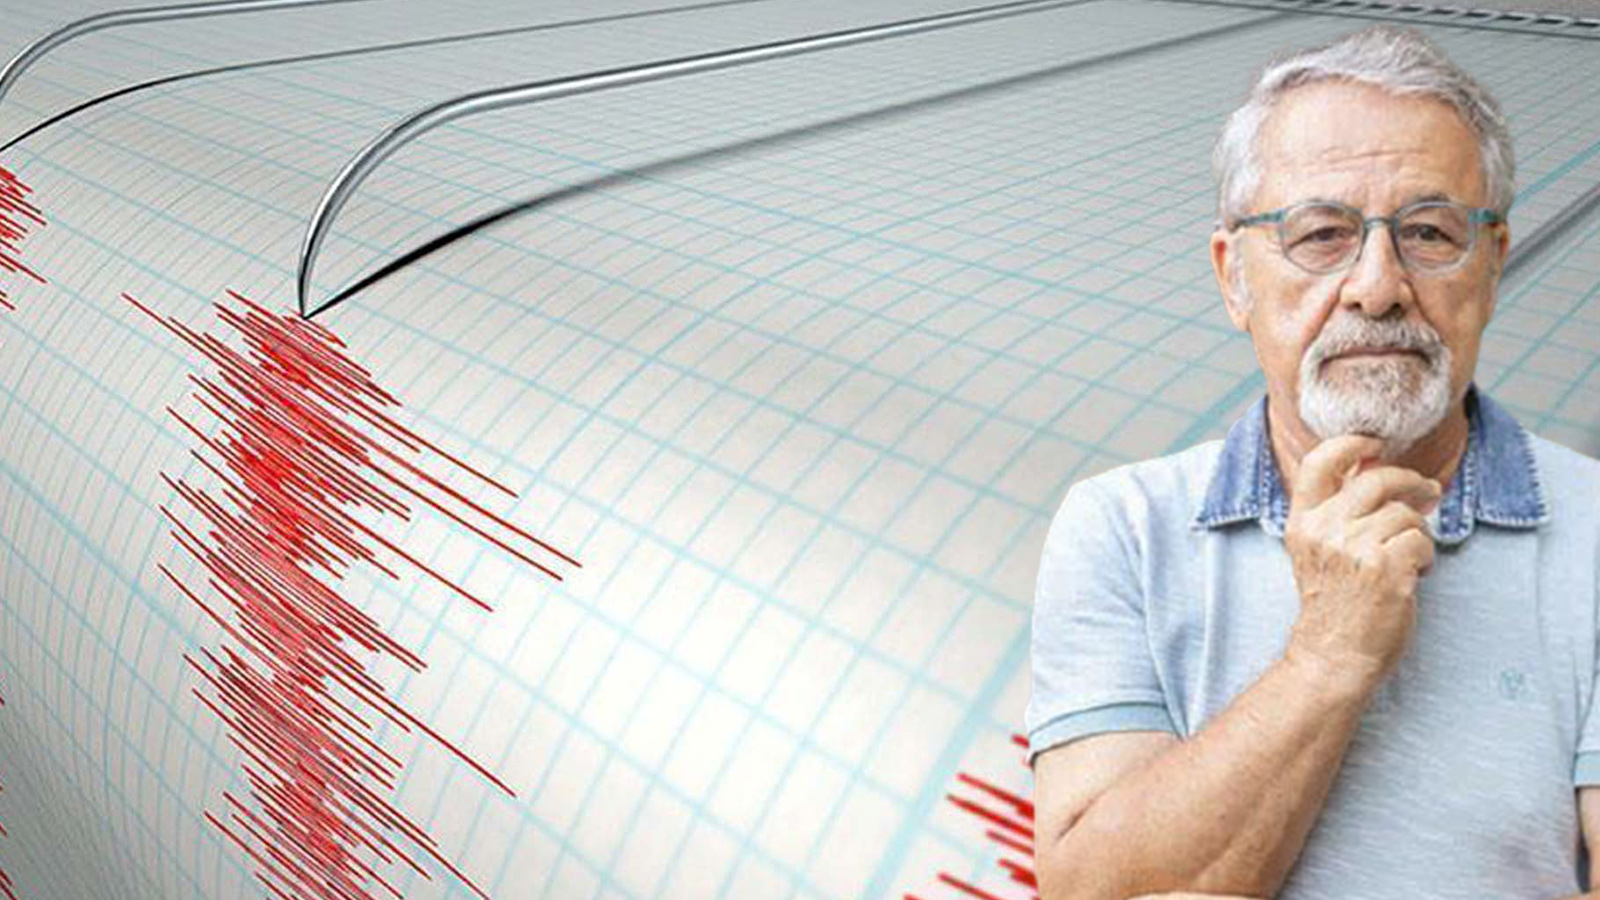 Marmara Denizi'nde Tekirdağ Şarköy açıklarında 4.1 deprem oldu, Naci Görür'ün açıklaması tedirgin etti: Konumu gereği uyarıcı